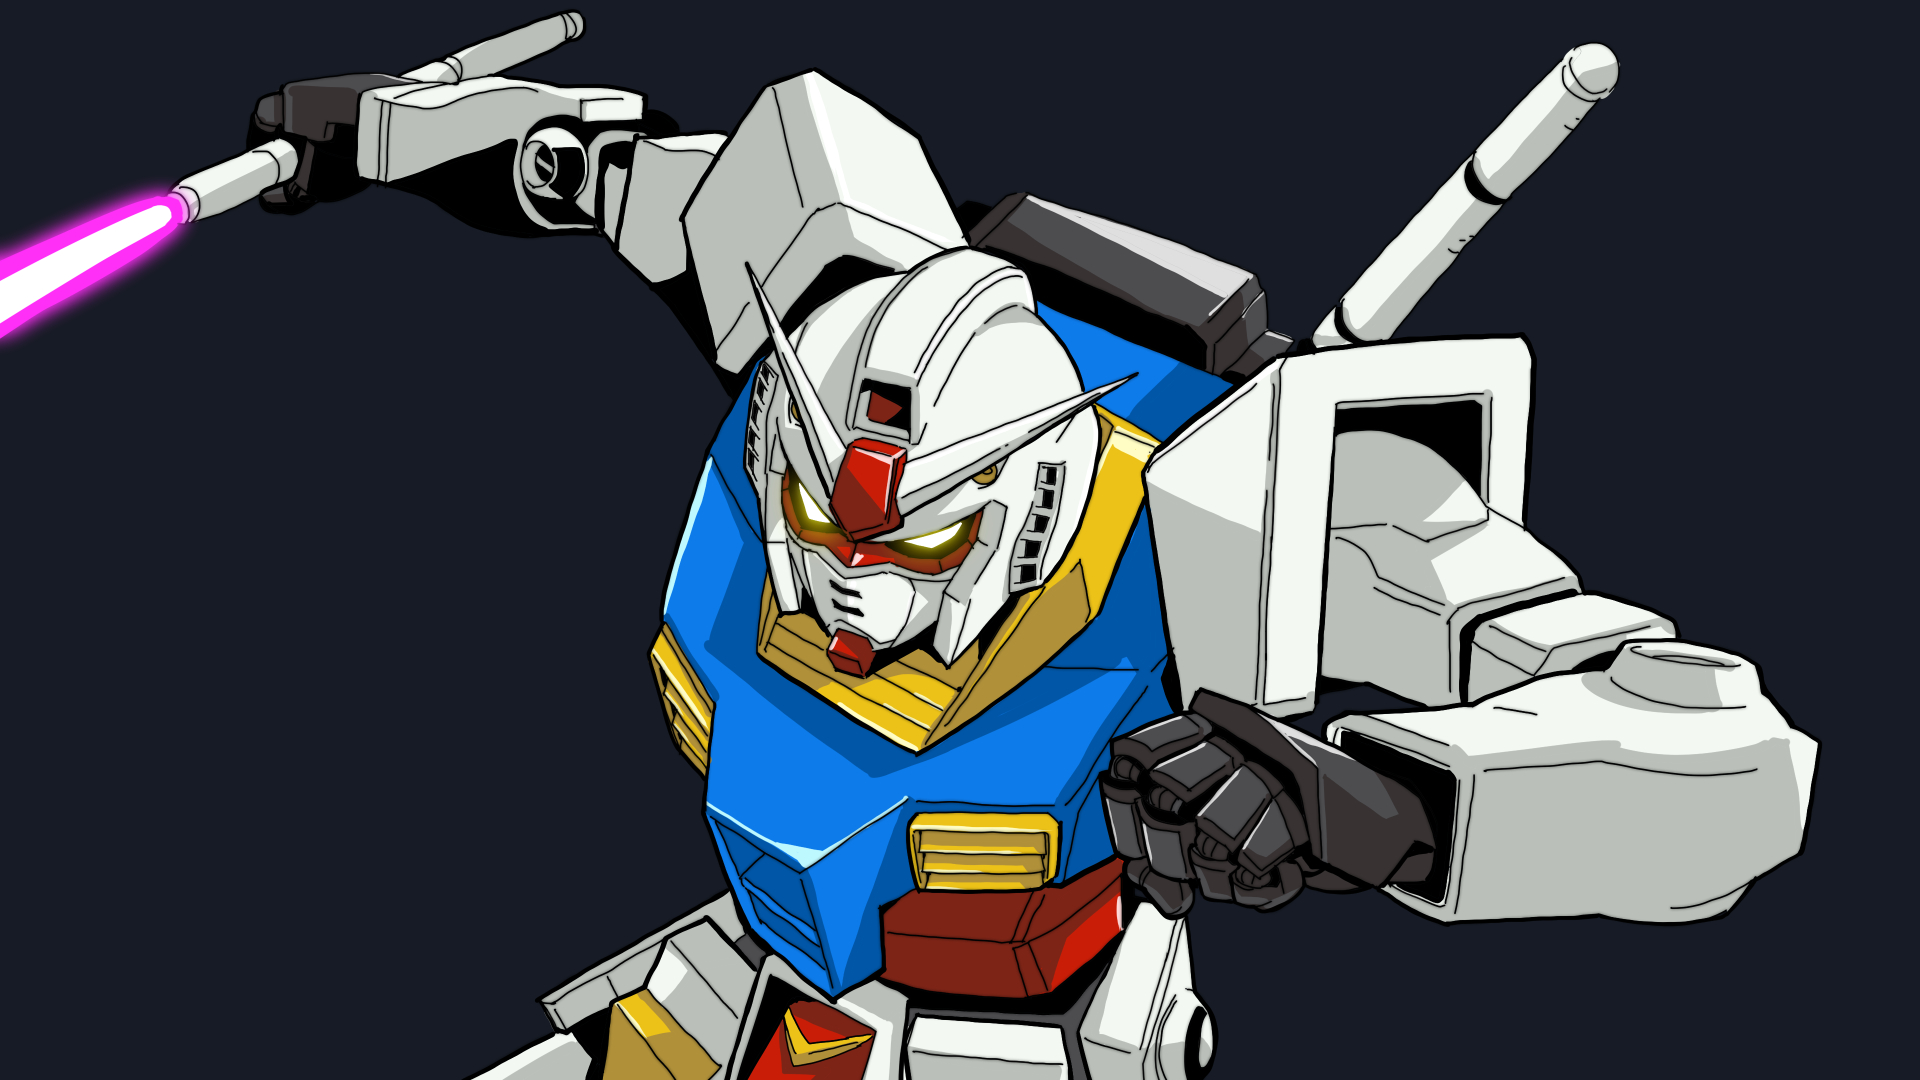 Anime Mechs Super Robot Taisen Gundam Mobile Suit Gundam RX 78 Gundam Artwork Digital Art Fan Art Si 1920x1080